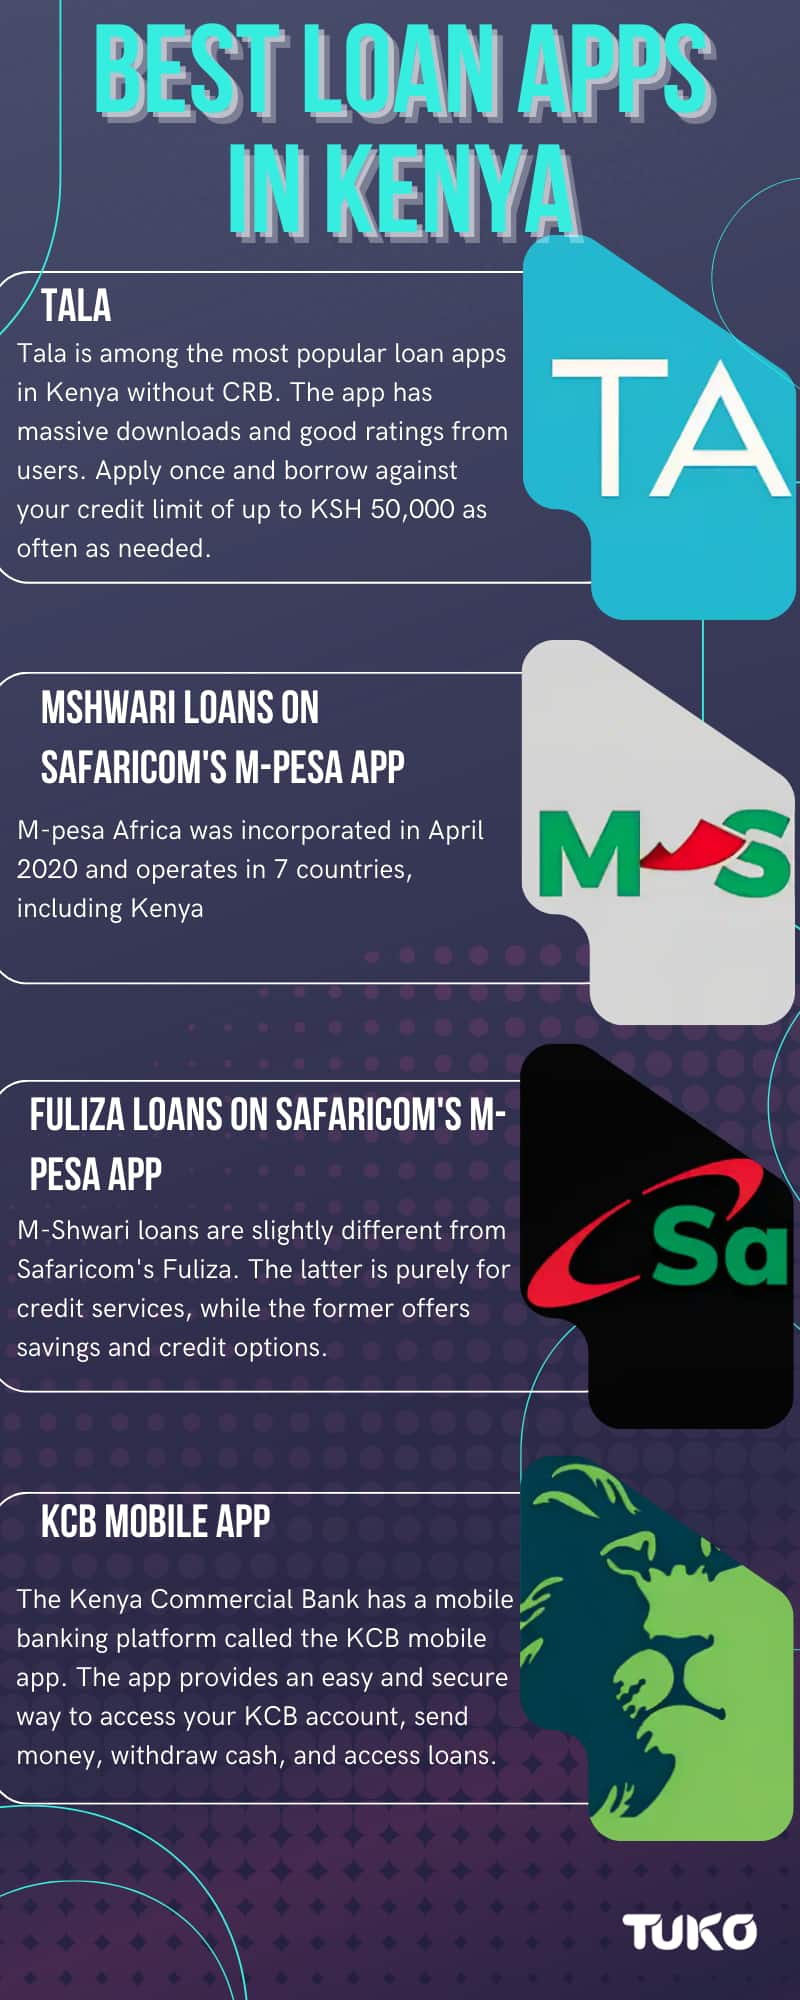 Best loan apps in Kenya for genuine instant loans